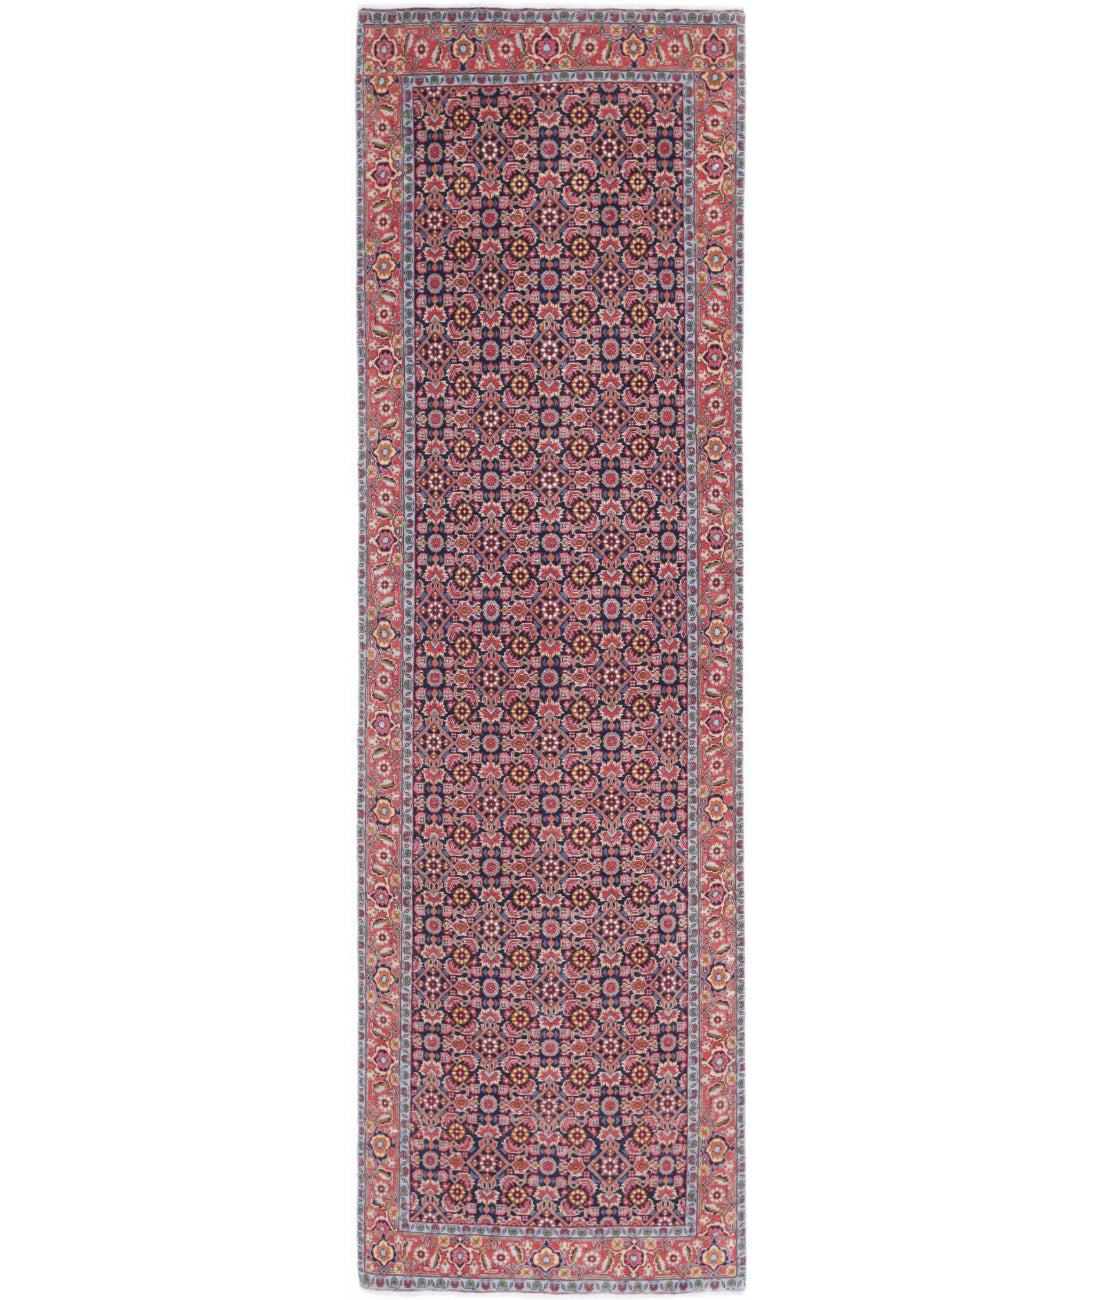 Bijar 2'9'' X 9'7'' Hand-Knotted Wool Rug 2'9'' x 9'7'' (83 X 288) / Blue / Red